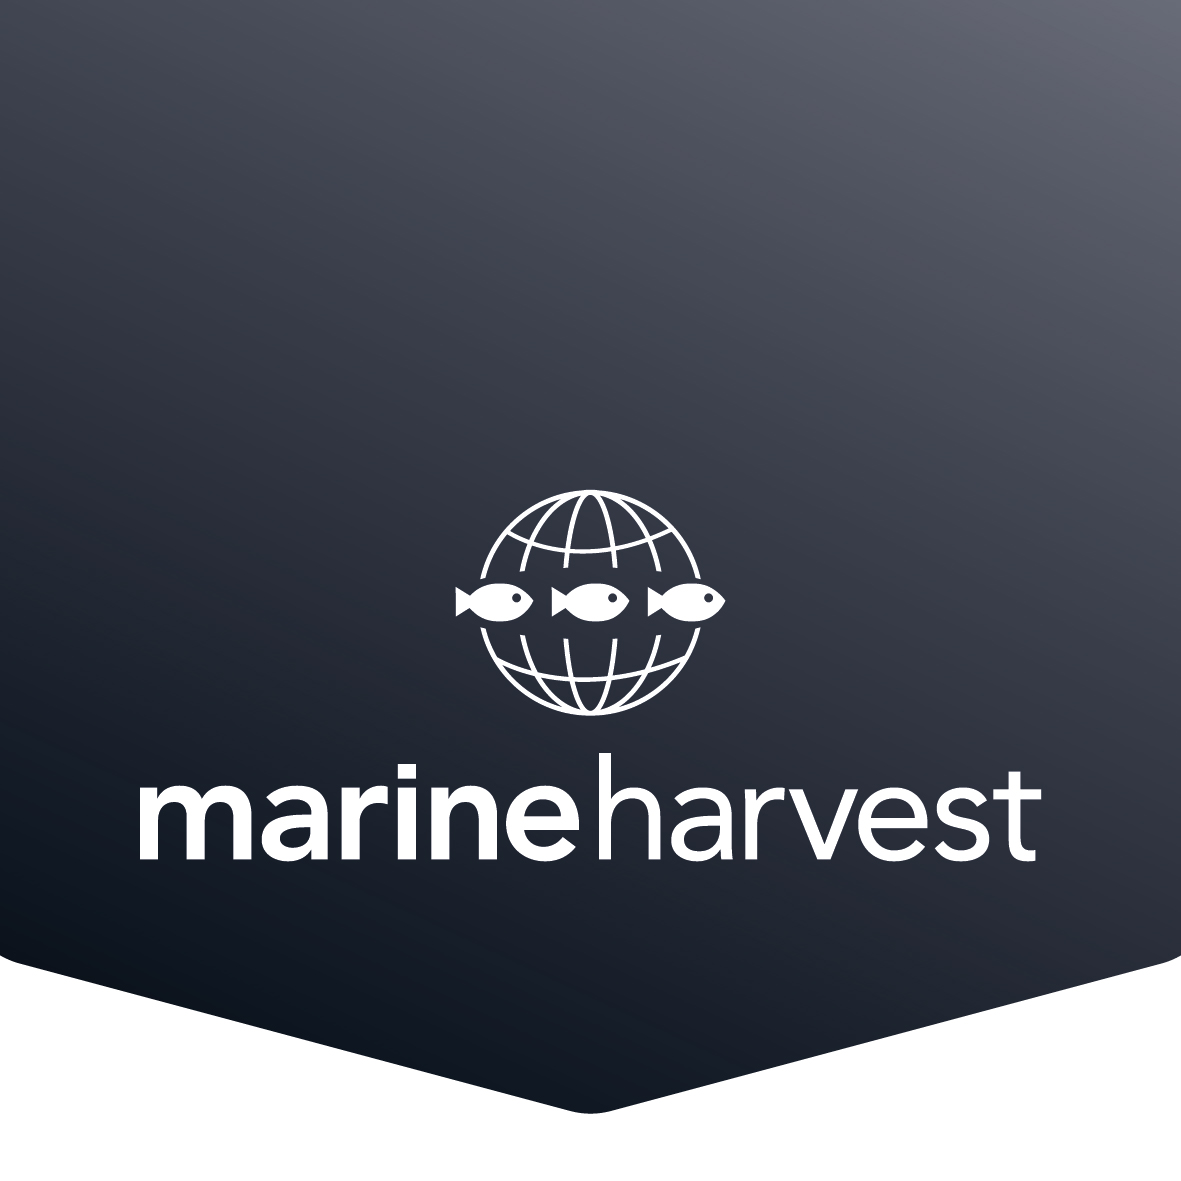 Marine Harvest